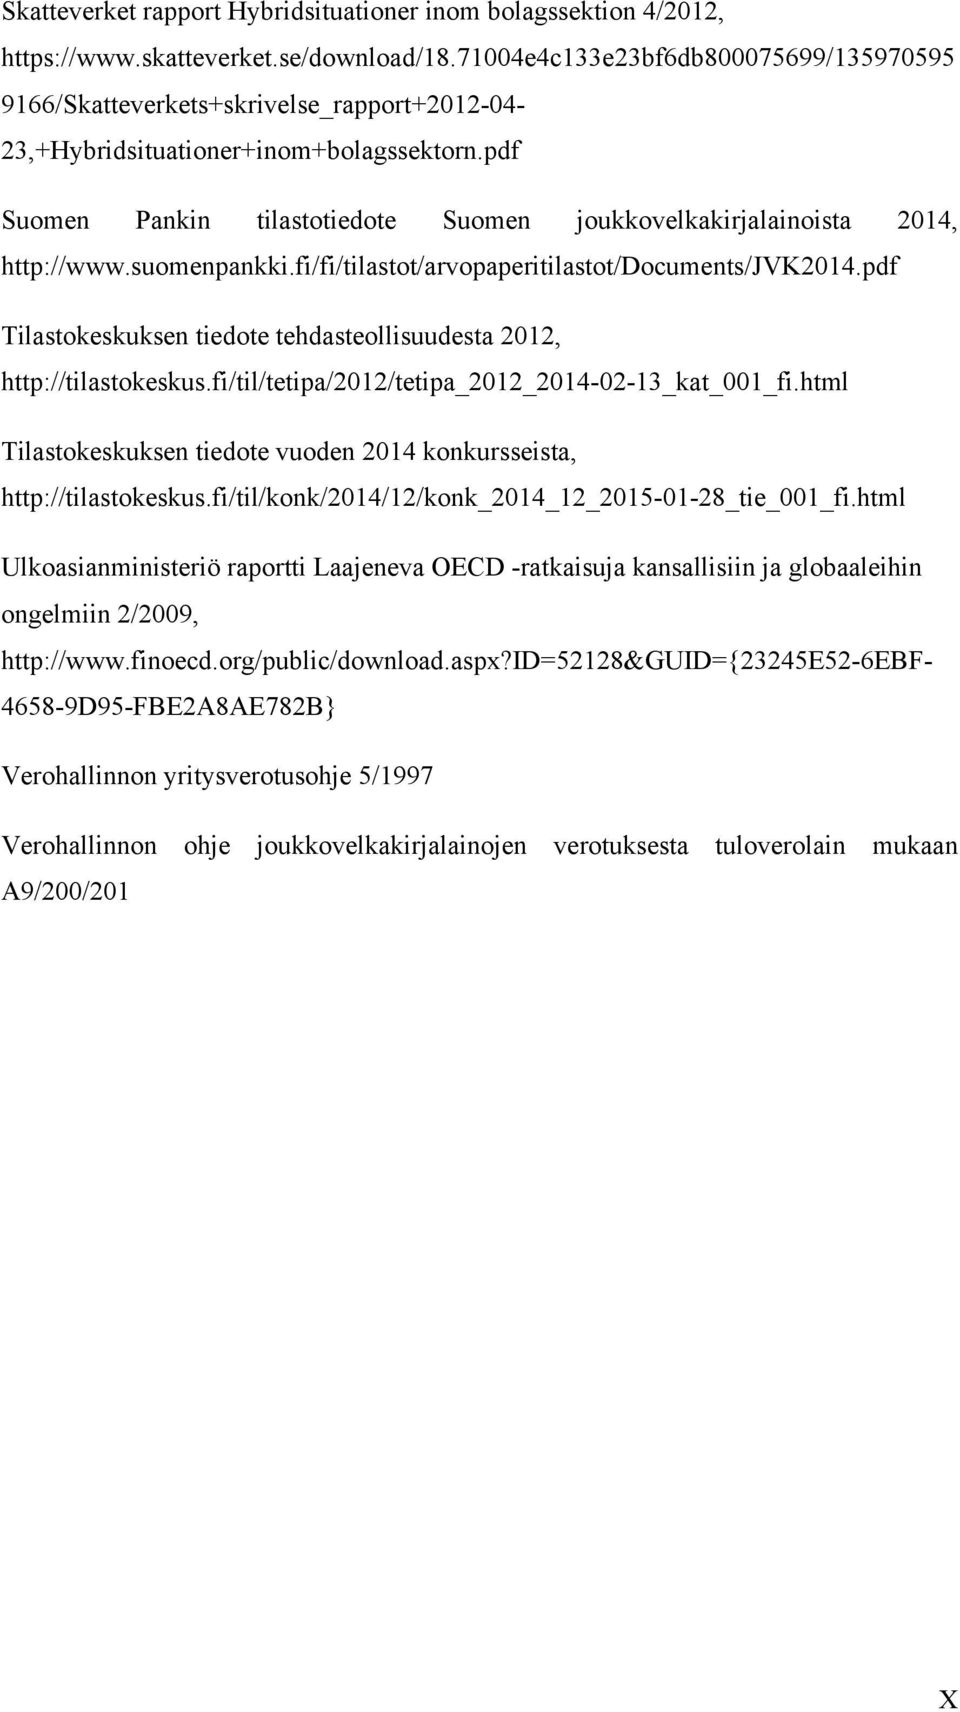 pdf Suomen Pankin tilastotiedote Suomen joukkovelkakirjalainoista 2014, http://www.suomenpankki.fi/fi/tilastot/arvopaperitilastot/documents/jvk2014.